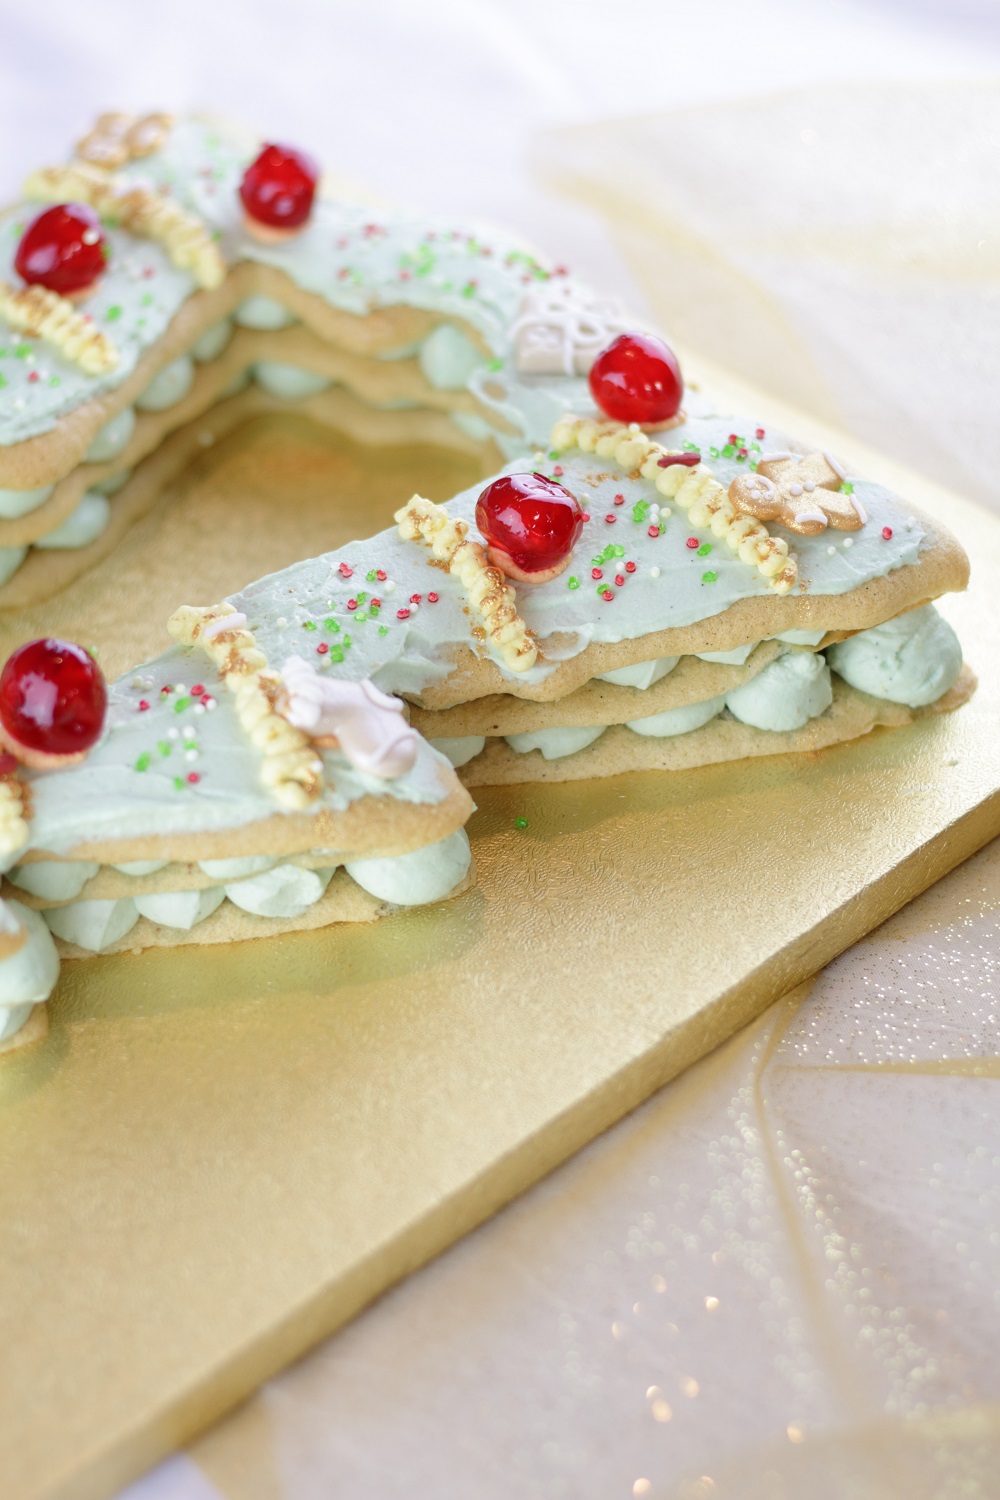 [Anzeige] Christmas Tree Cake - Die weihnachtliche Variante vom Letter Cake